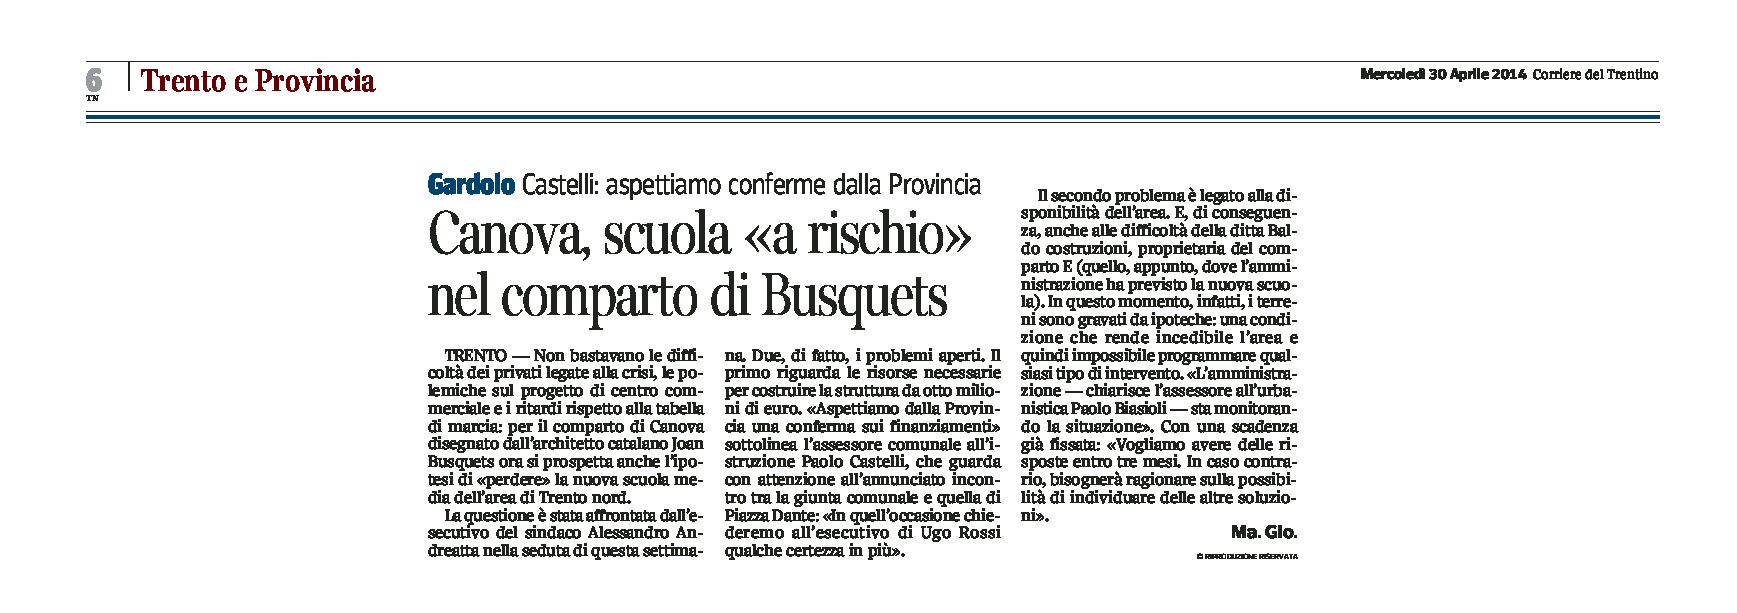 Trento: per il comparto di Canova disegnato da Busquets, a rischio la nuova scuola media